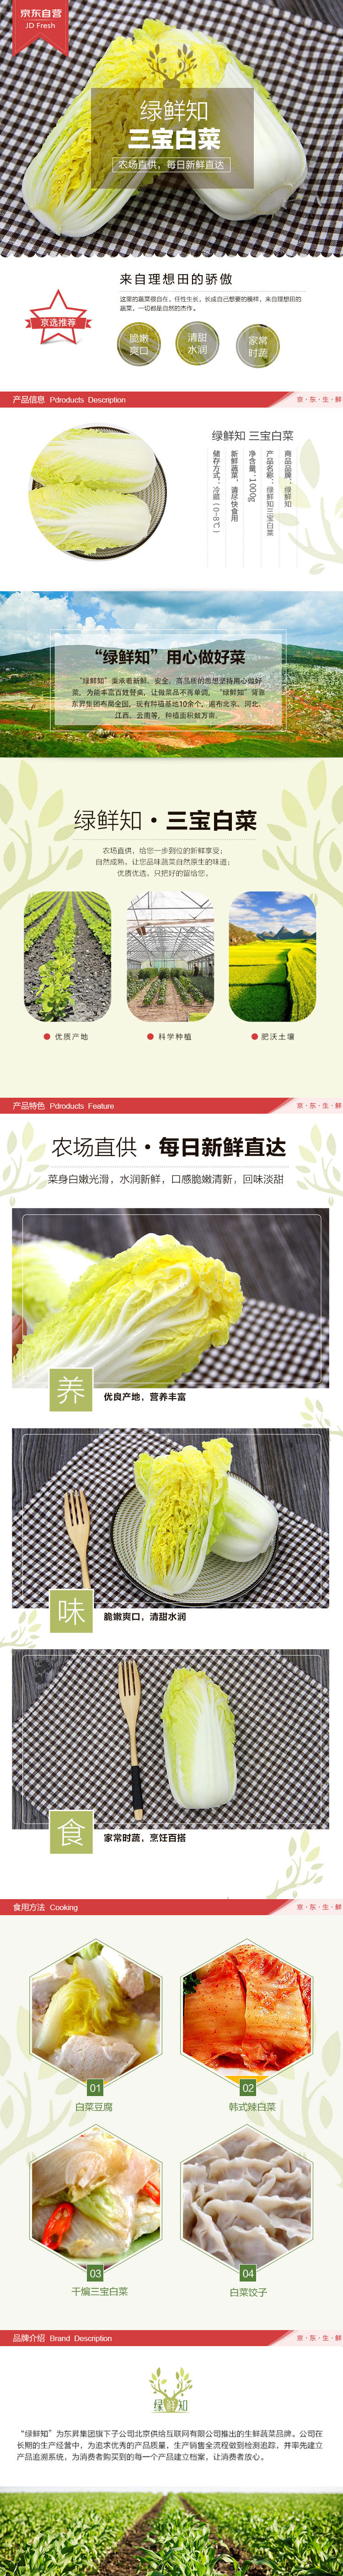 绿鲜知 三宝白菜 约1kg 火锅涮菜 新鲜蔬菜-京东